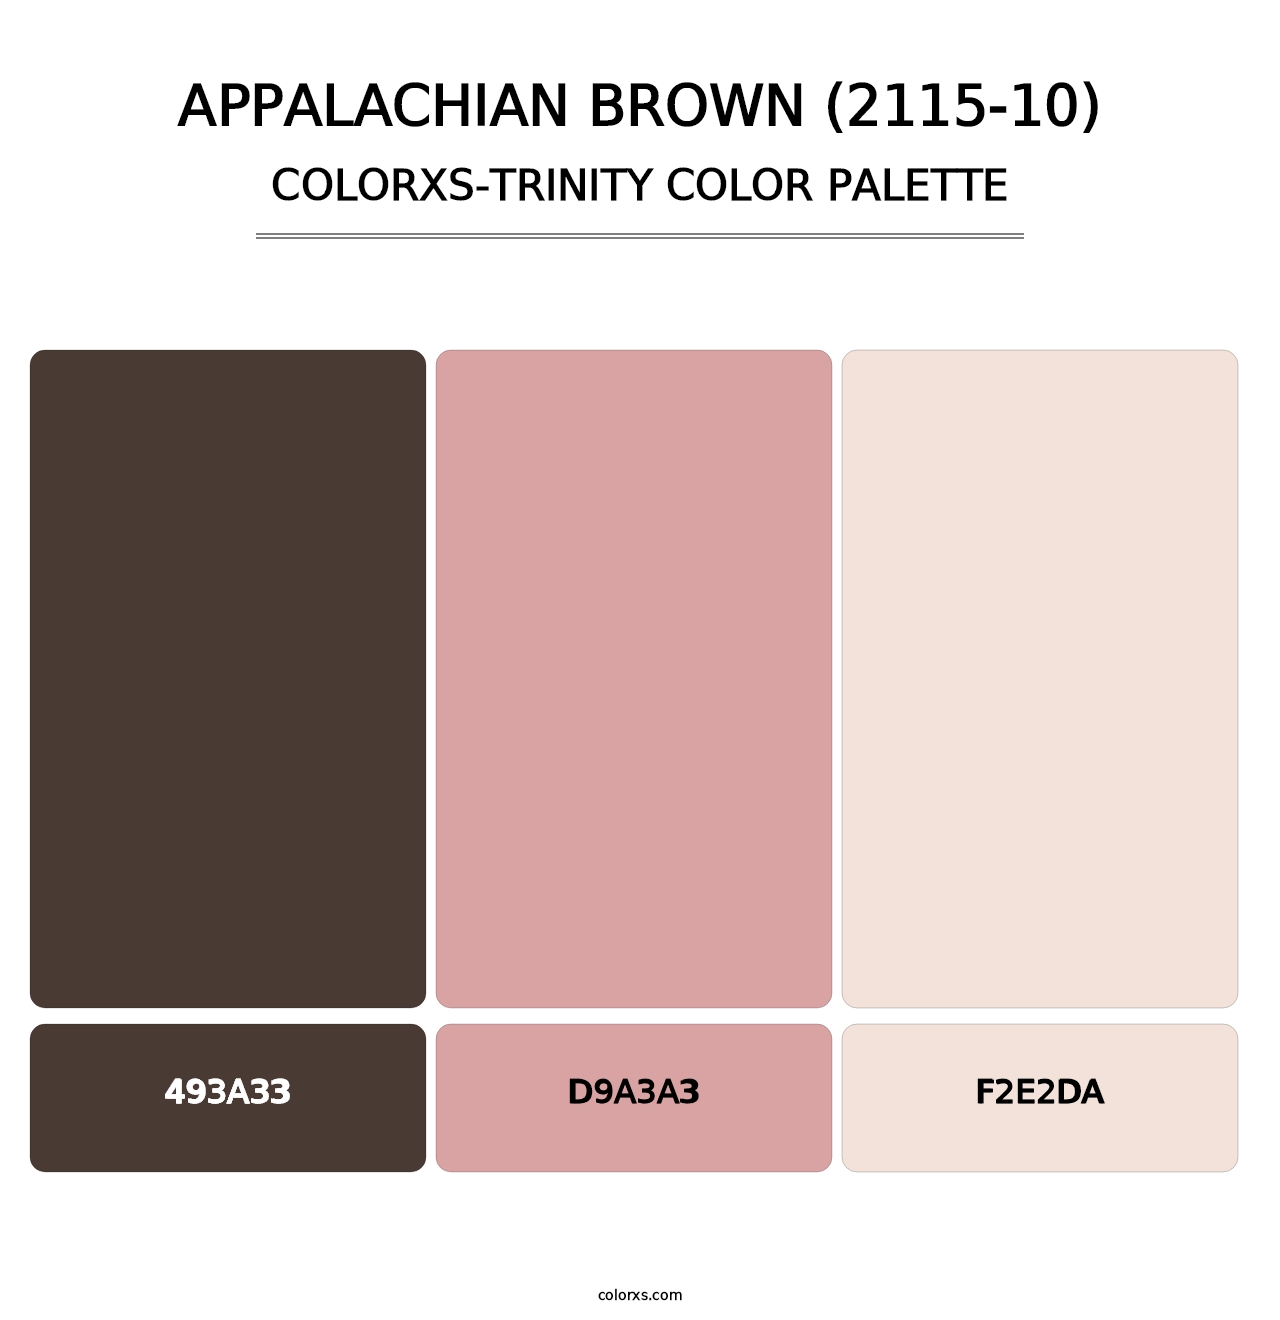 Appalachian Brown (2115-10) - Colorxs Trinity Palette